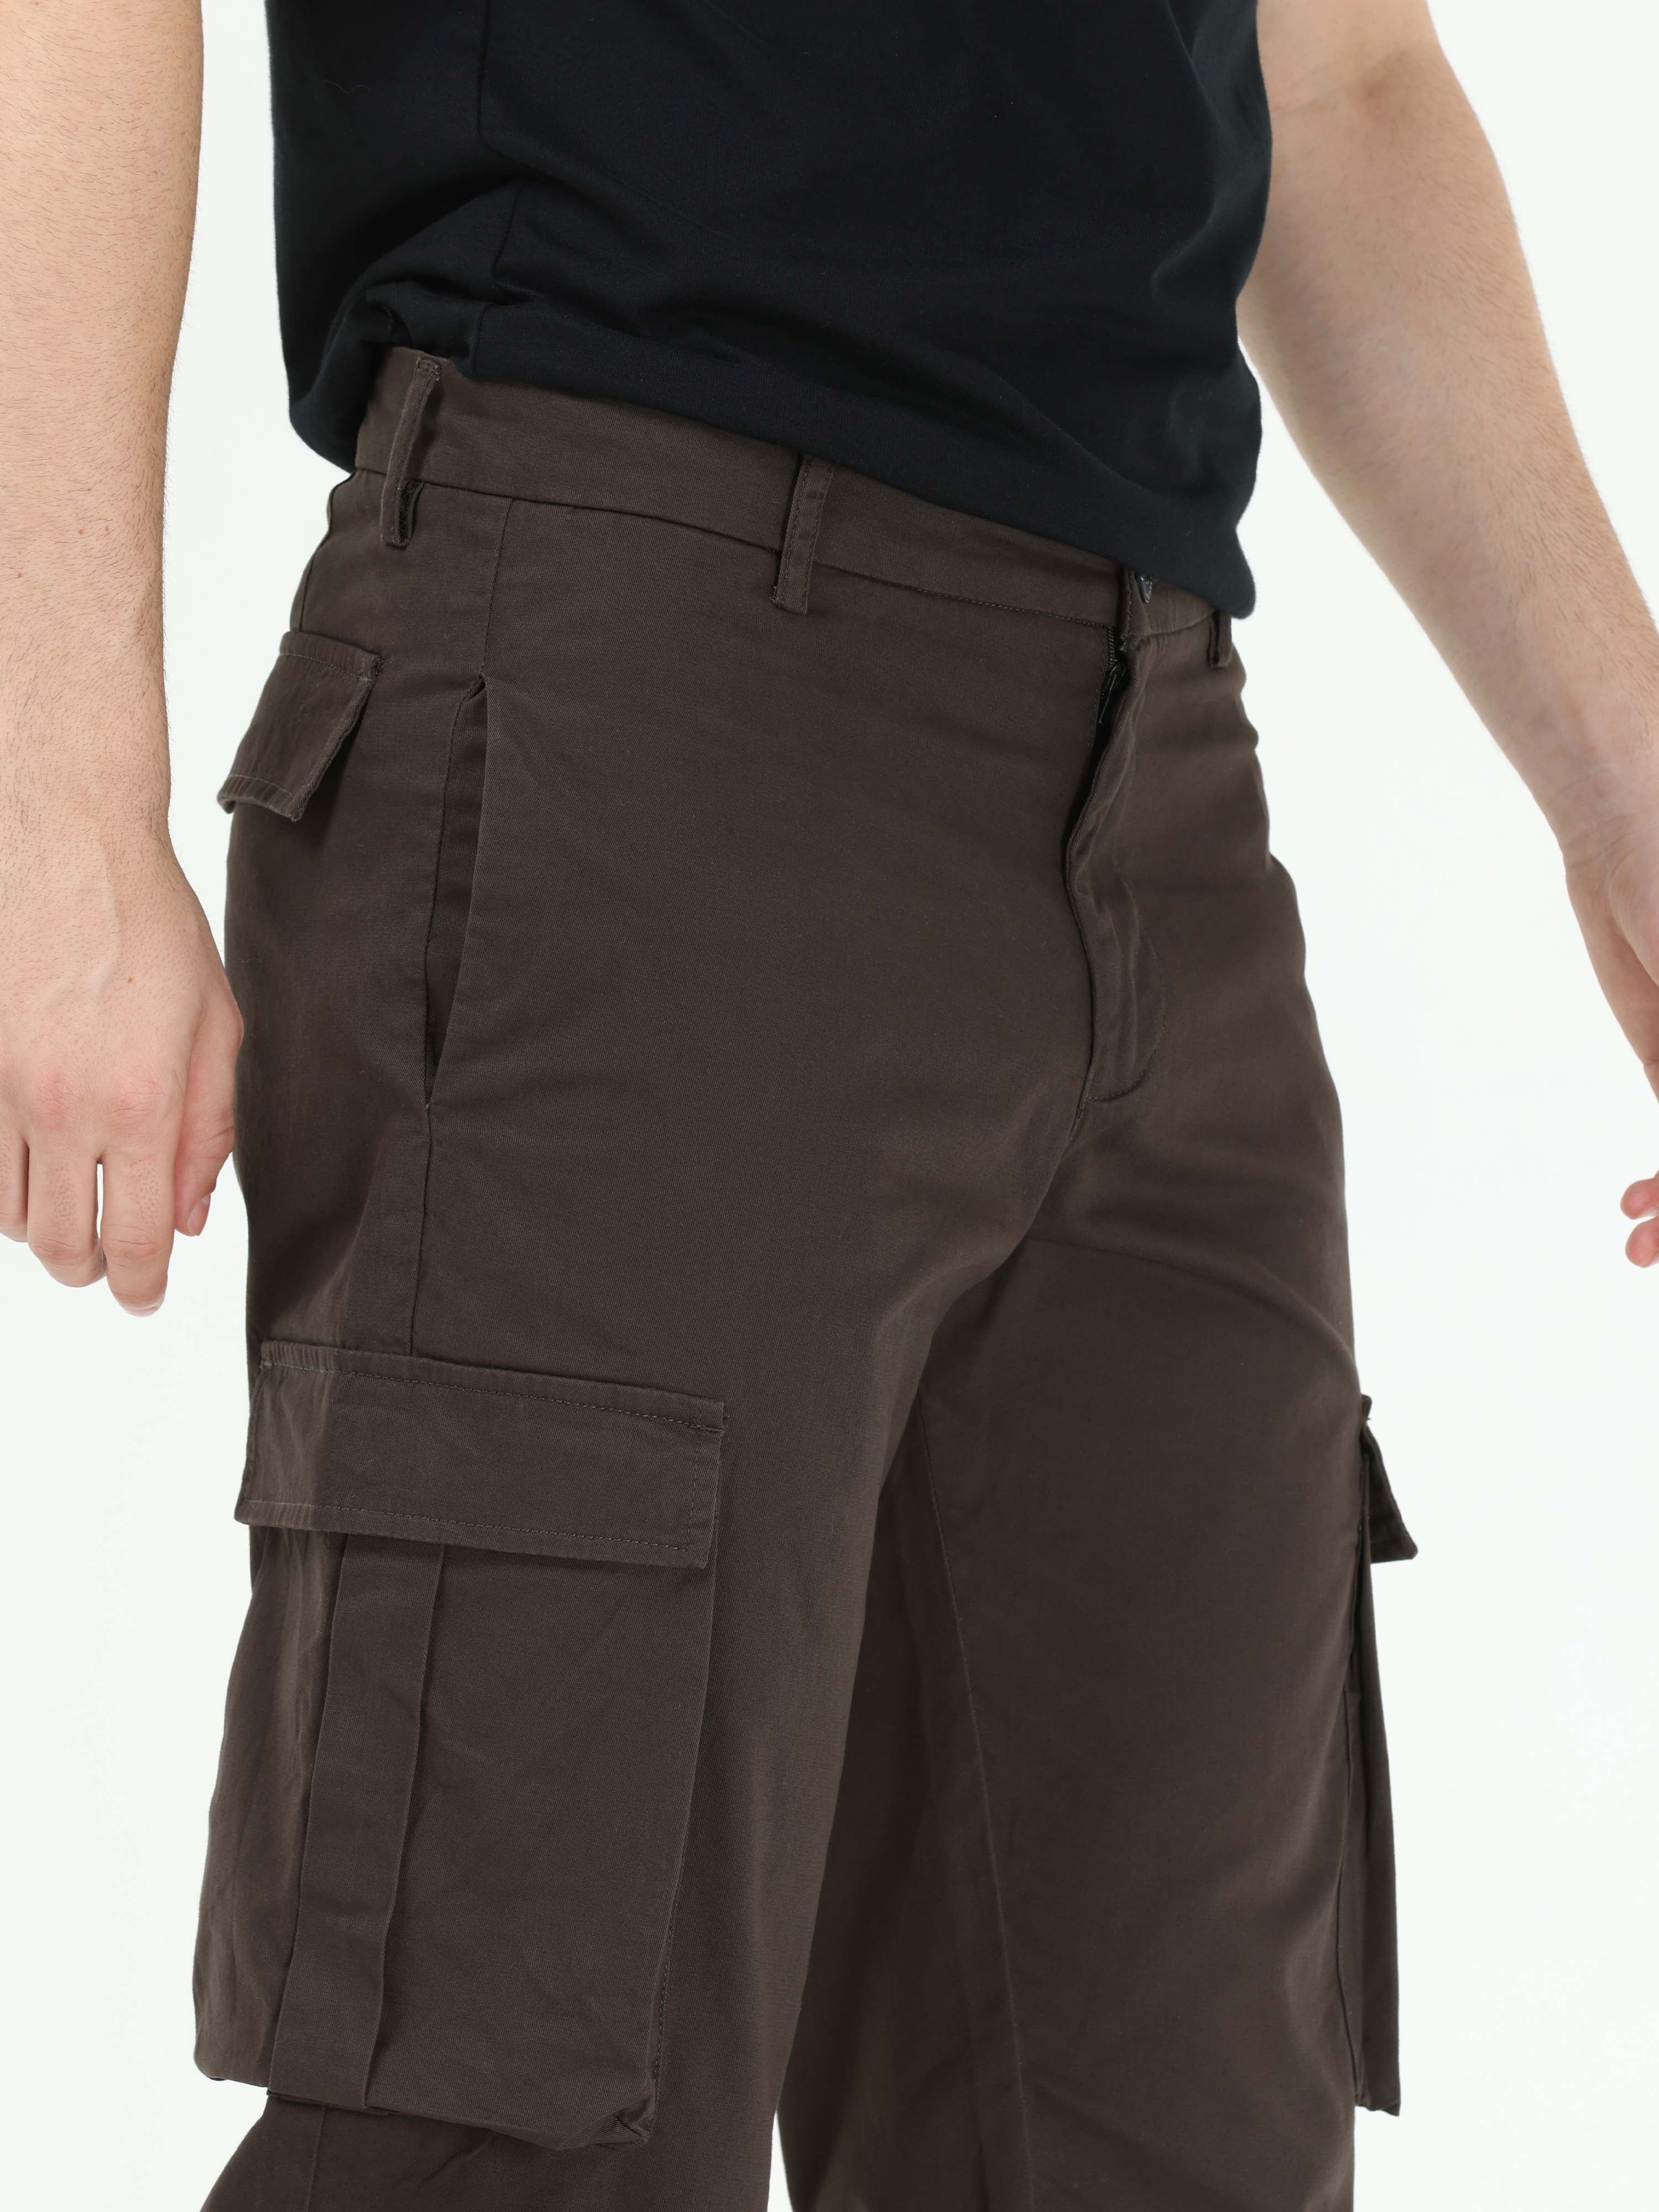 Shop Latest Brown Baggy Cargo Pants Men's Online in India